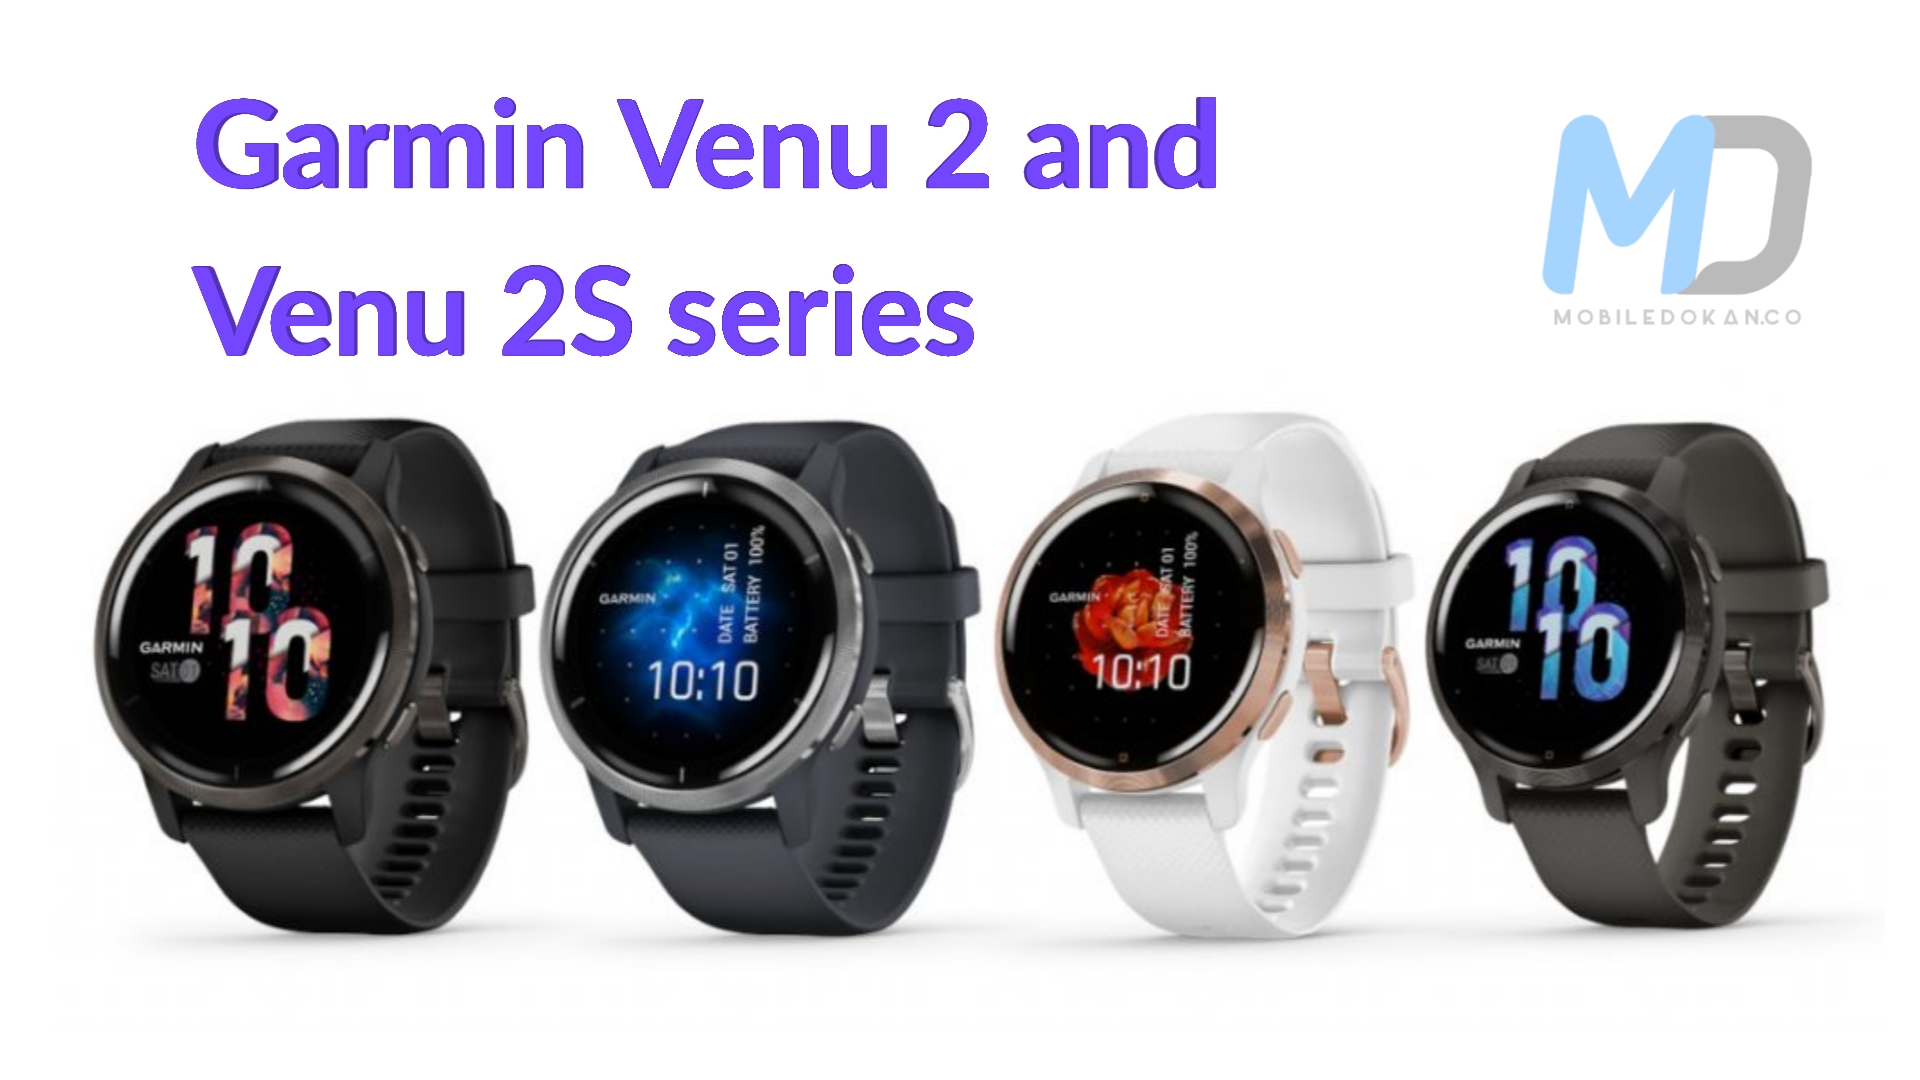 Garmin launches the Venu 2 and Venu 2S series